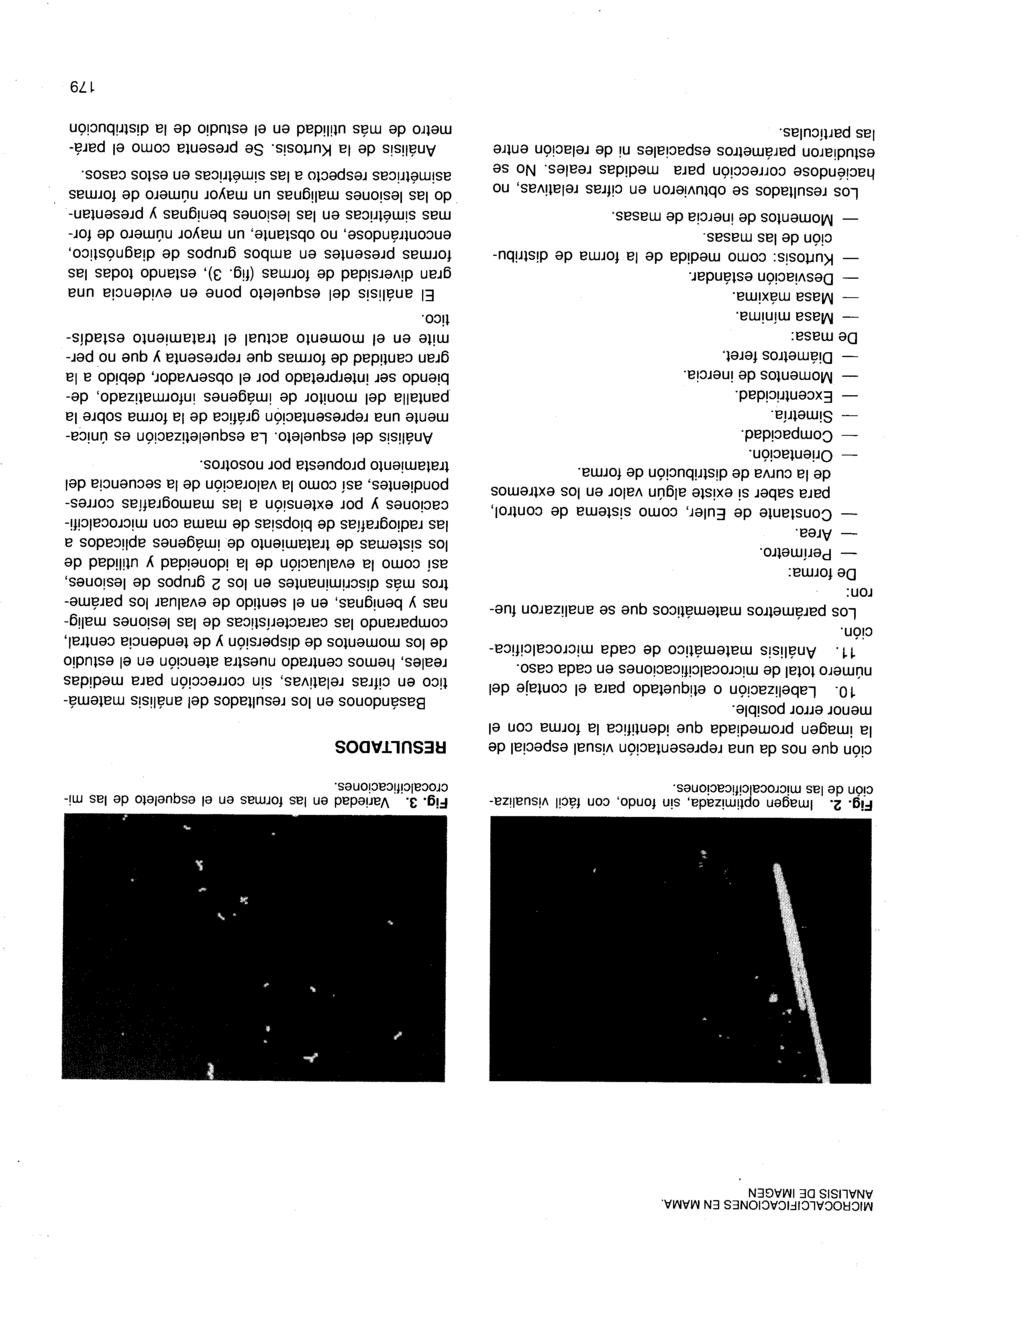 MICROCALCIFICACIONES EN MAMA. ANALISIS DE IMAGEN Fig. 2. Imagen optimizada, sin fondo, con fácil visualización de las microcalcificaciones.